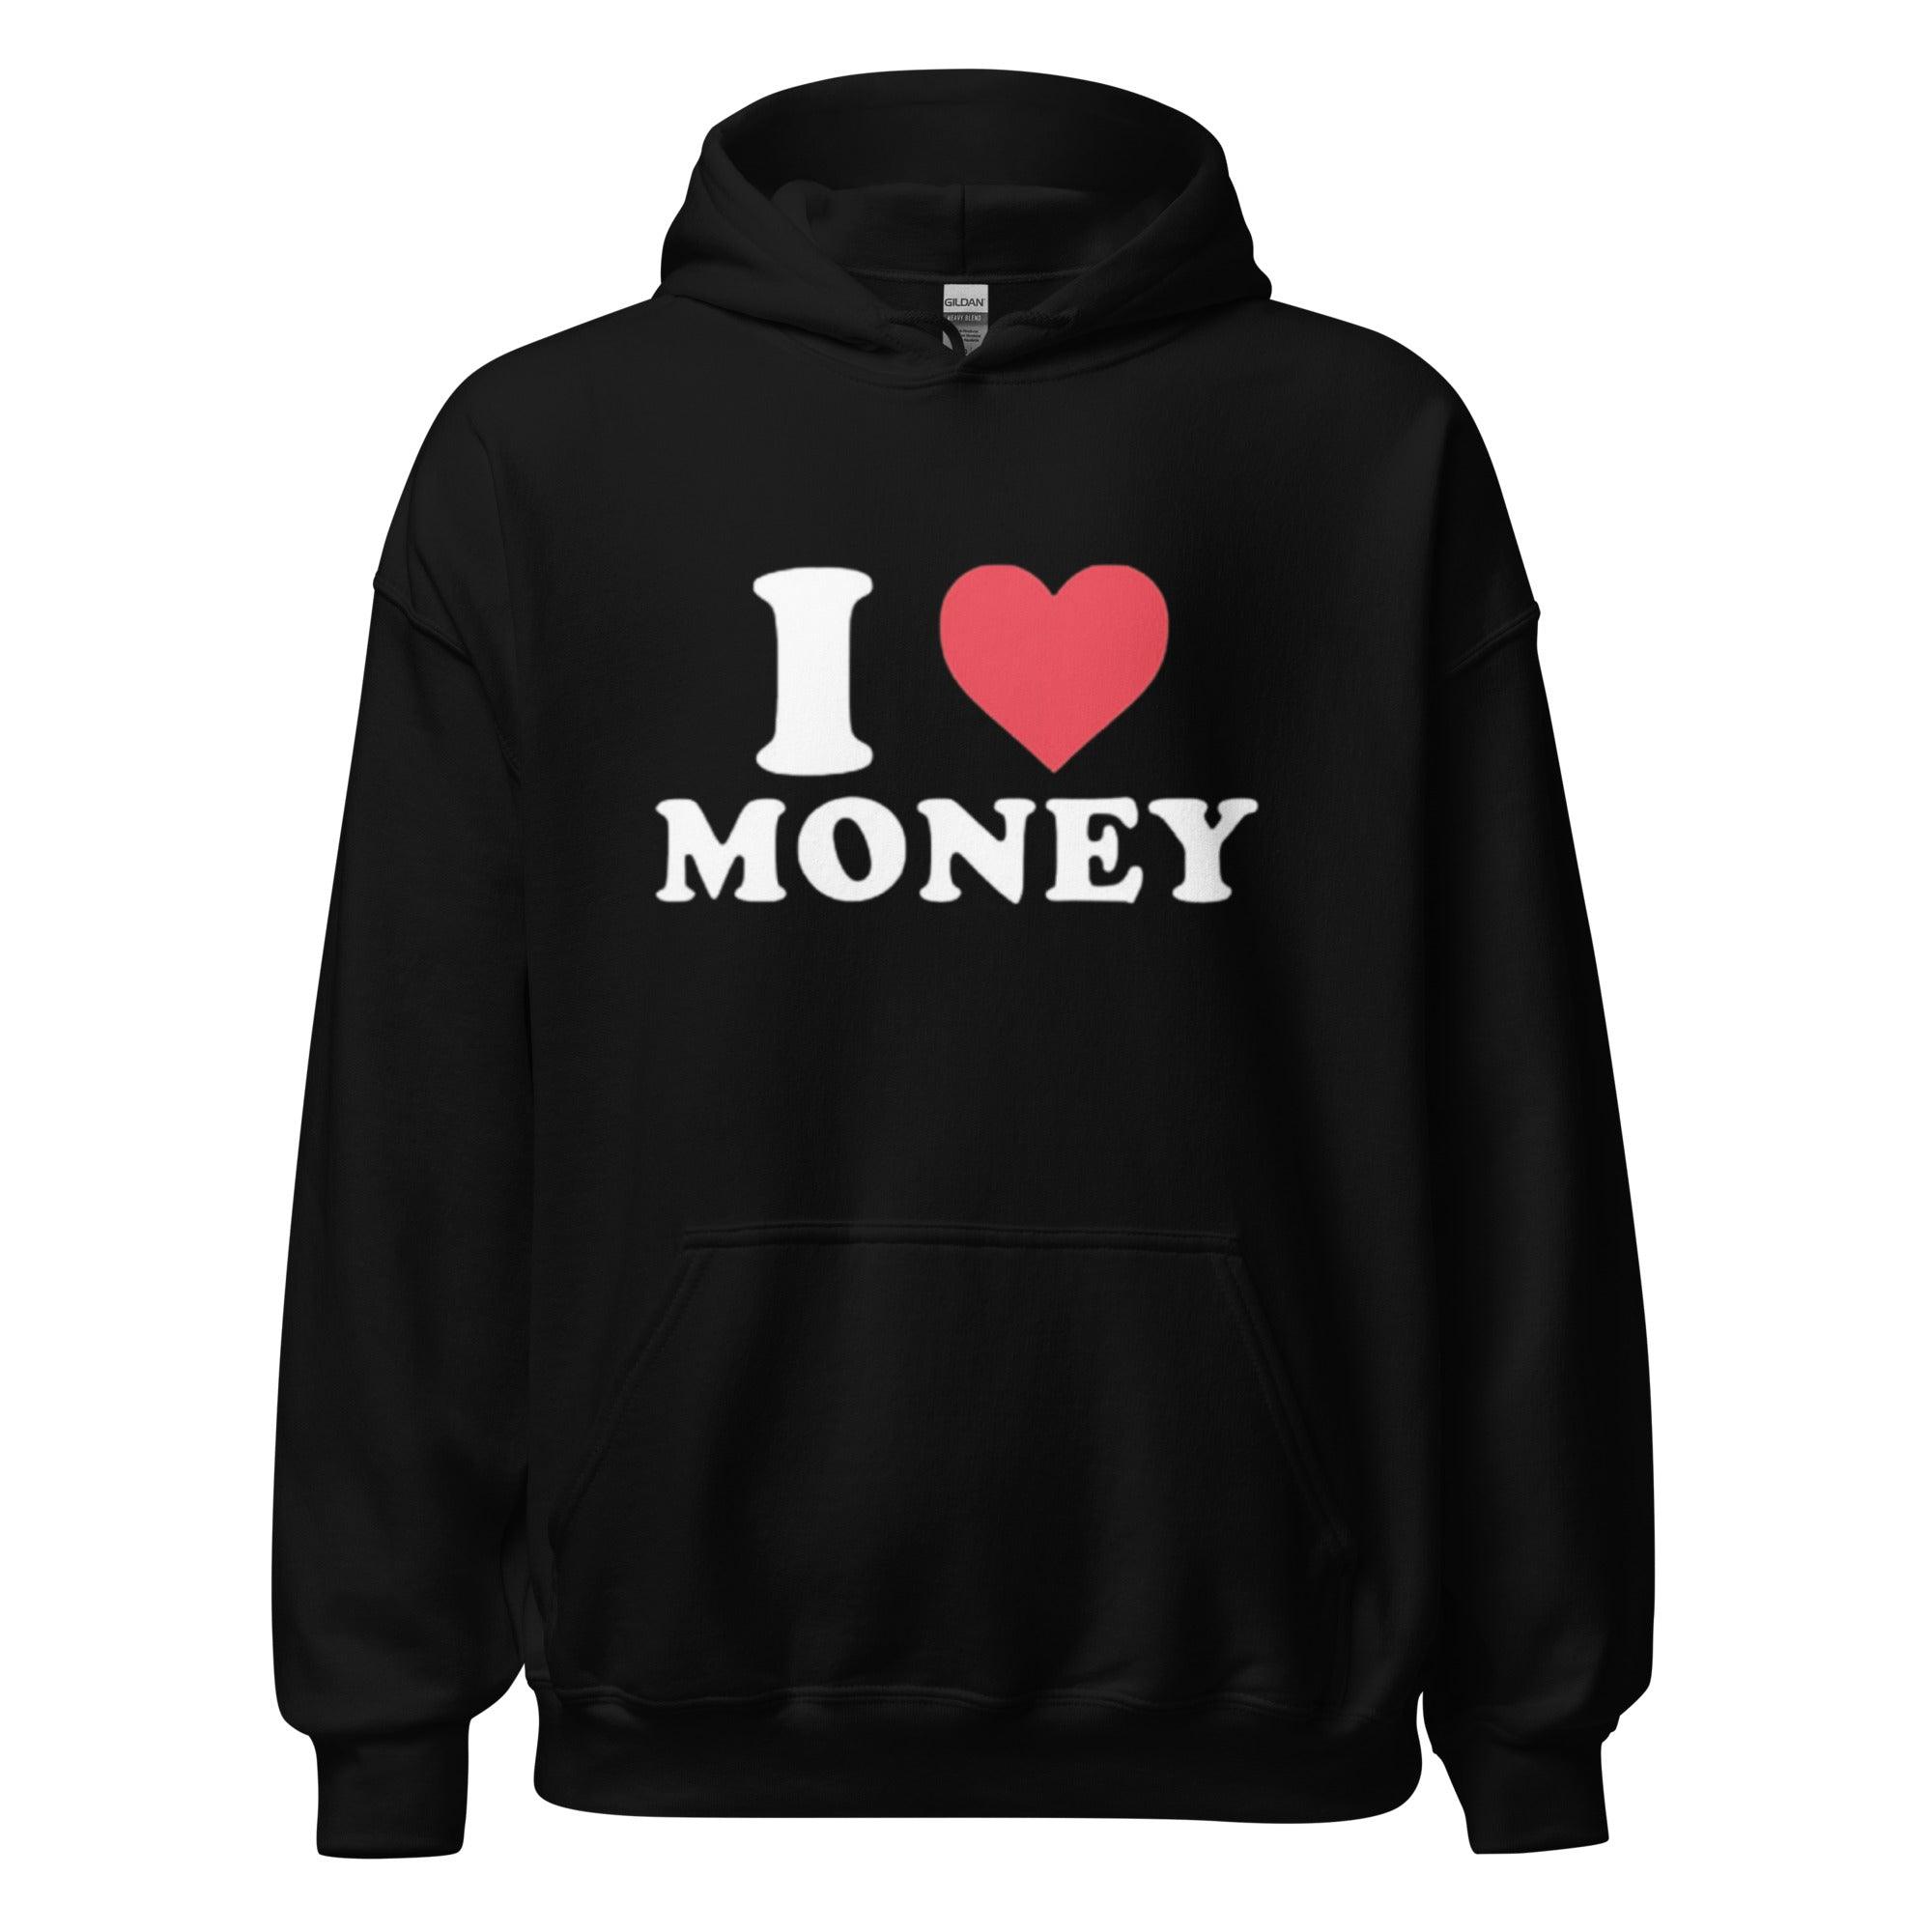 I love Money Top Koala Soft Style Black Unisex Tee - TopKoalaTee